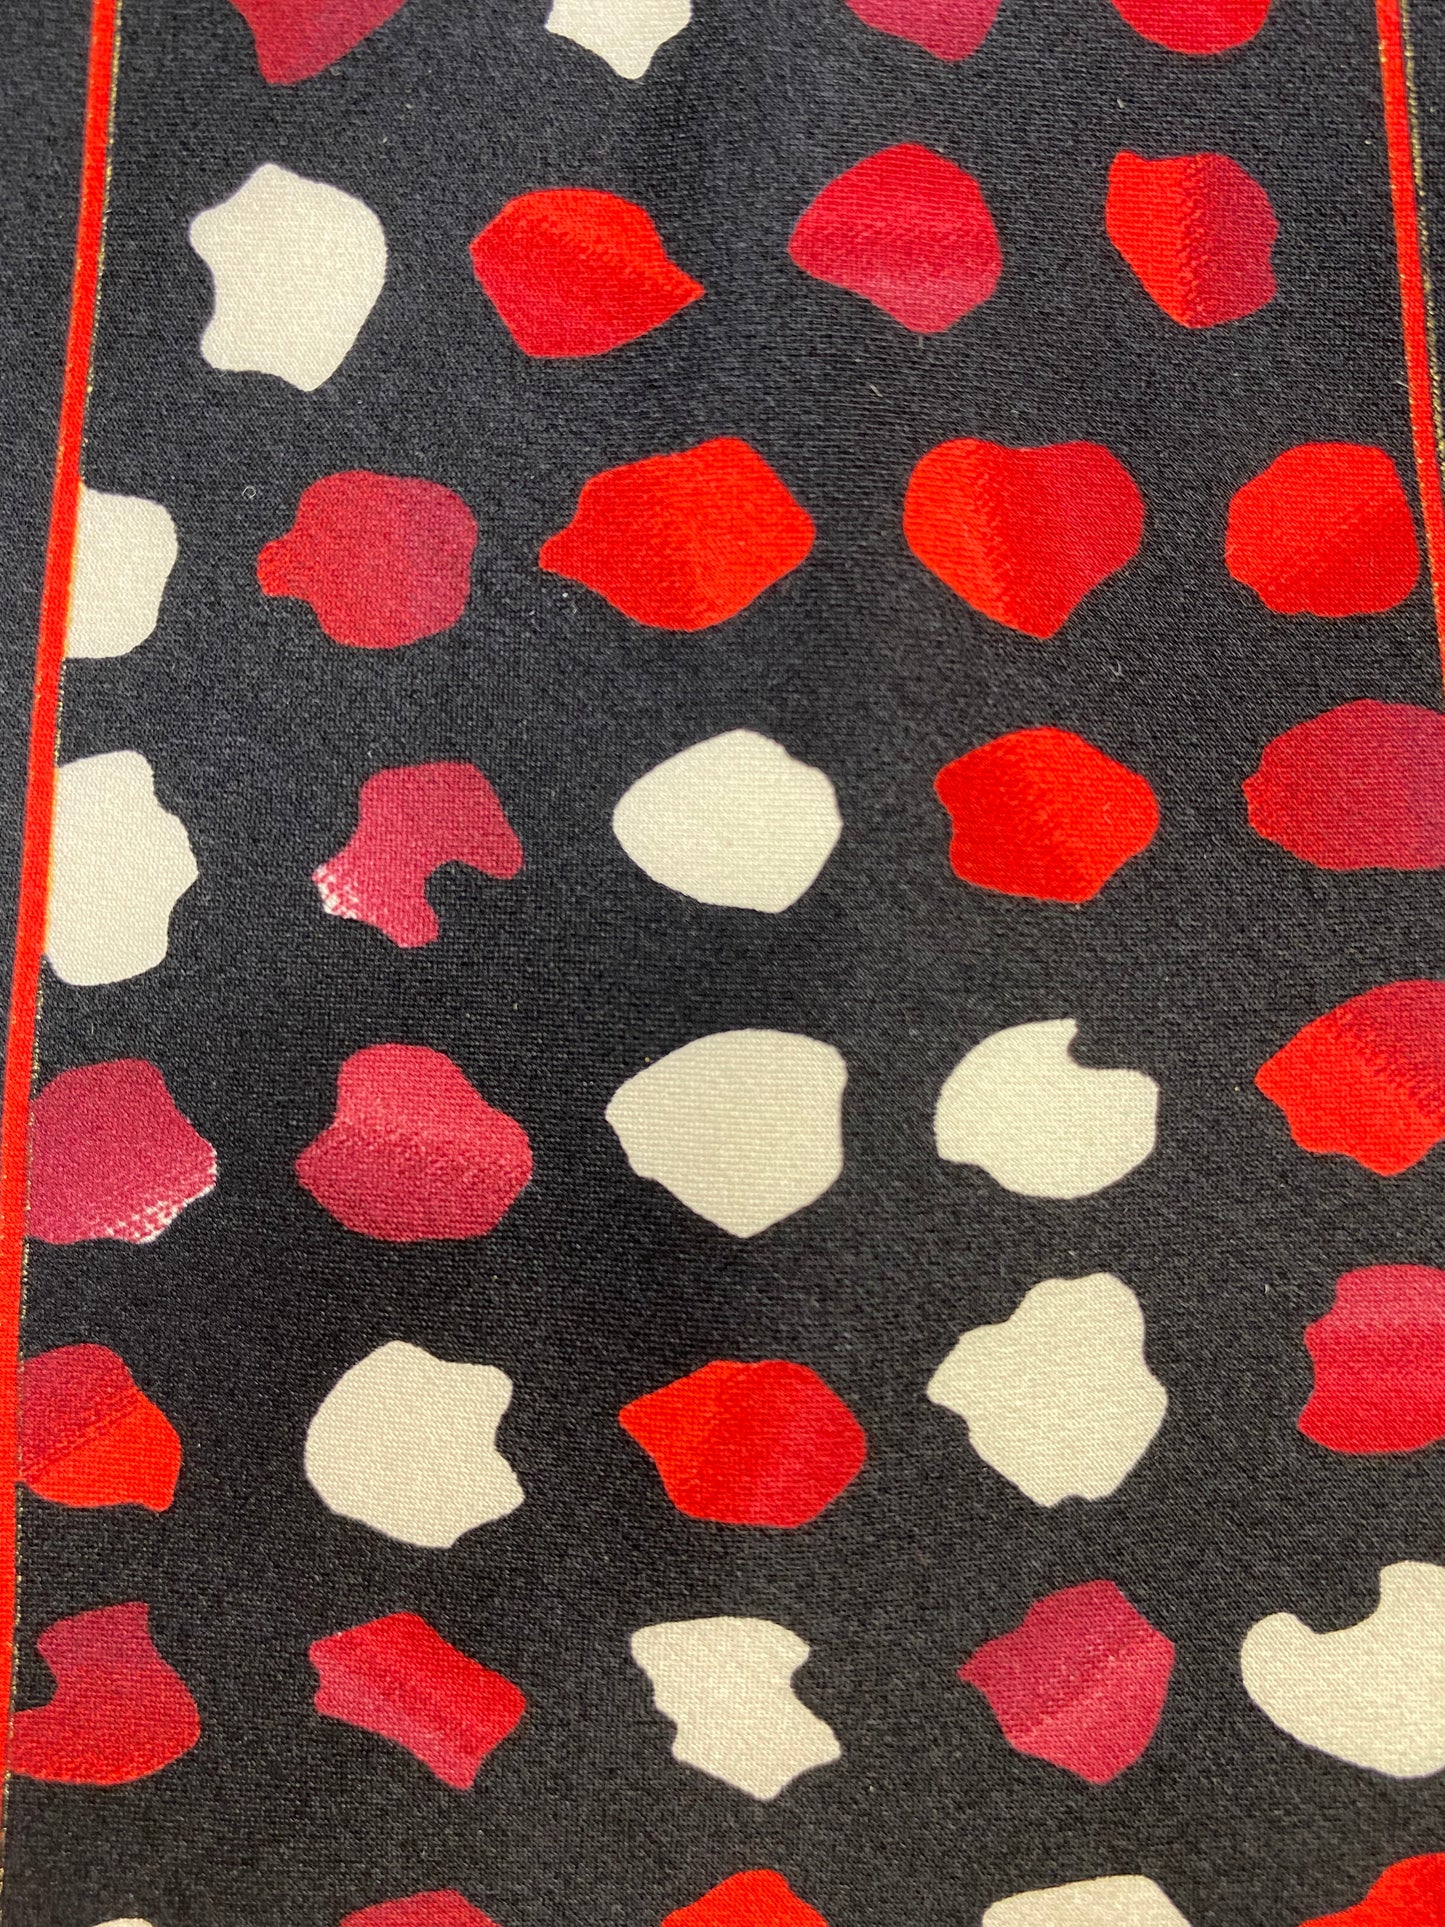 90s Deadstock Silk Necktie, Vintage Red/ Black Abstract Blot Pattern Tie, NOS